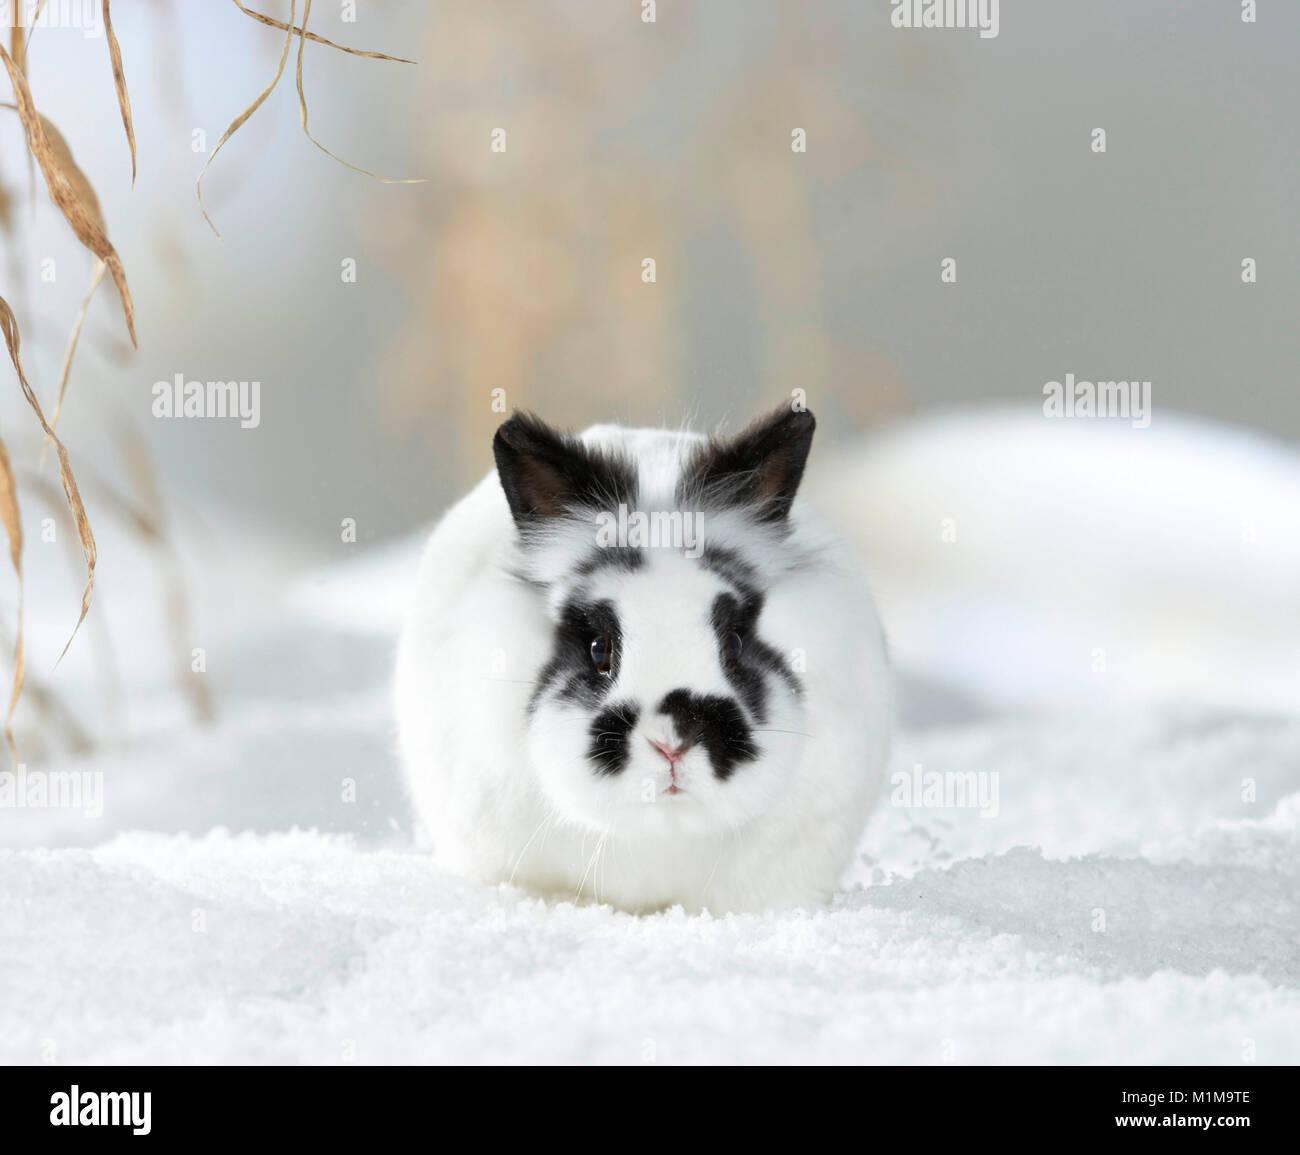 Lapin Nain Néerlandais dans la neige. Allemagne Banque D'Images